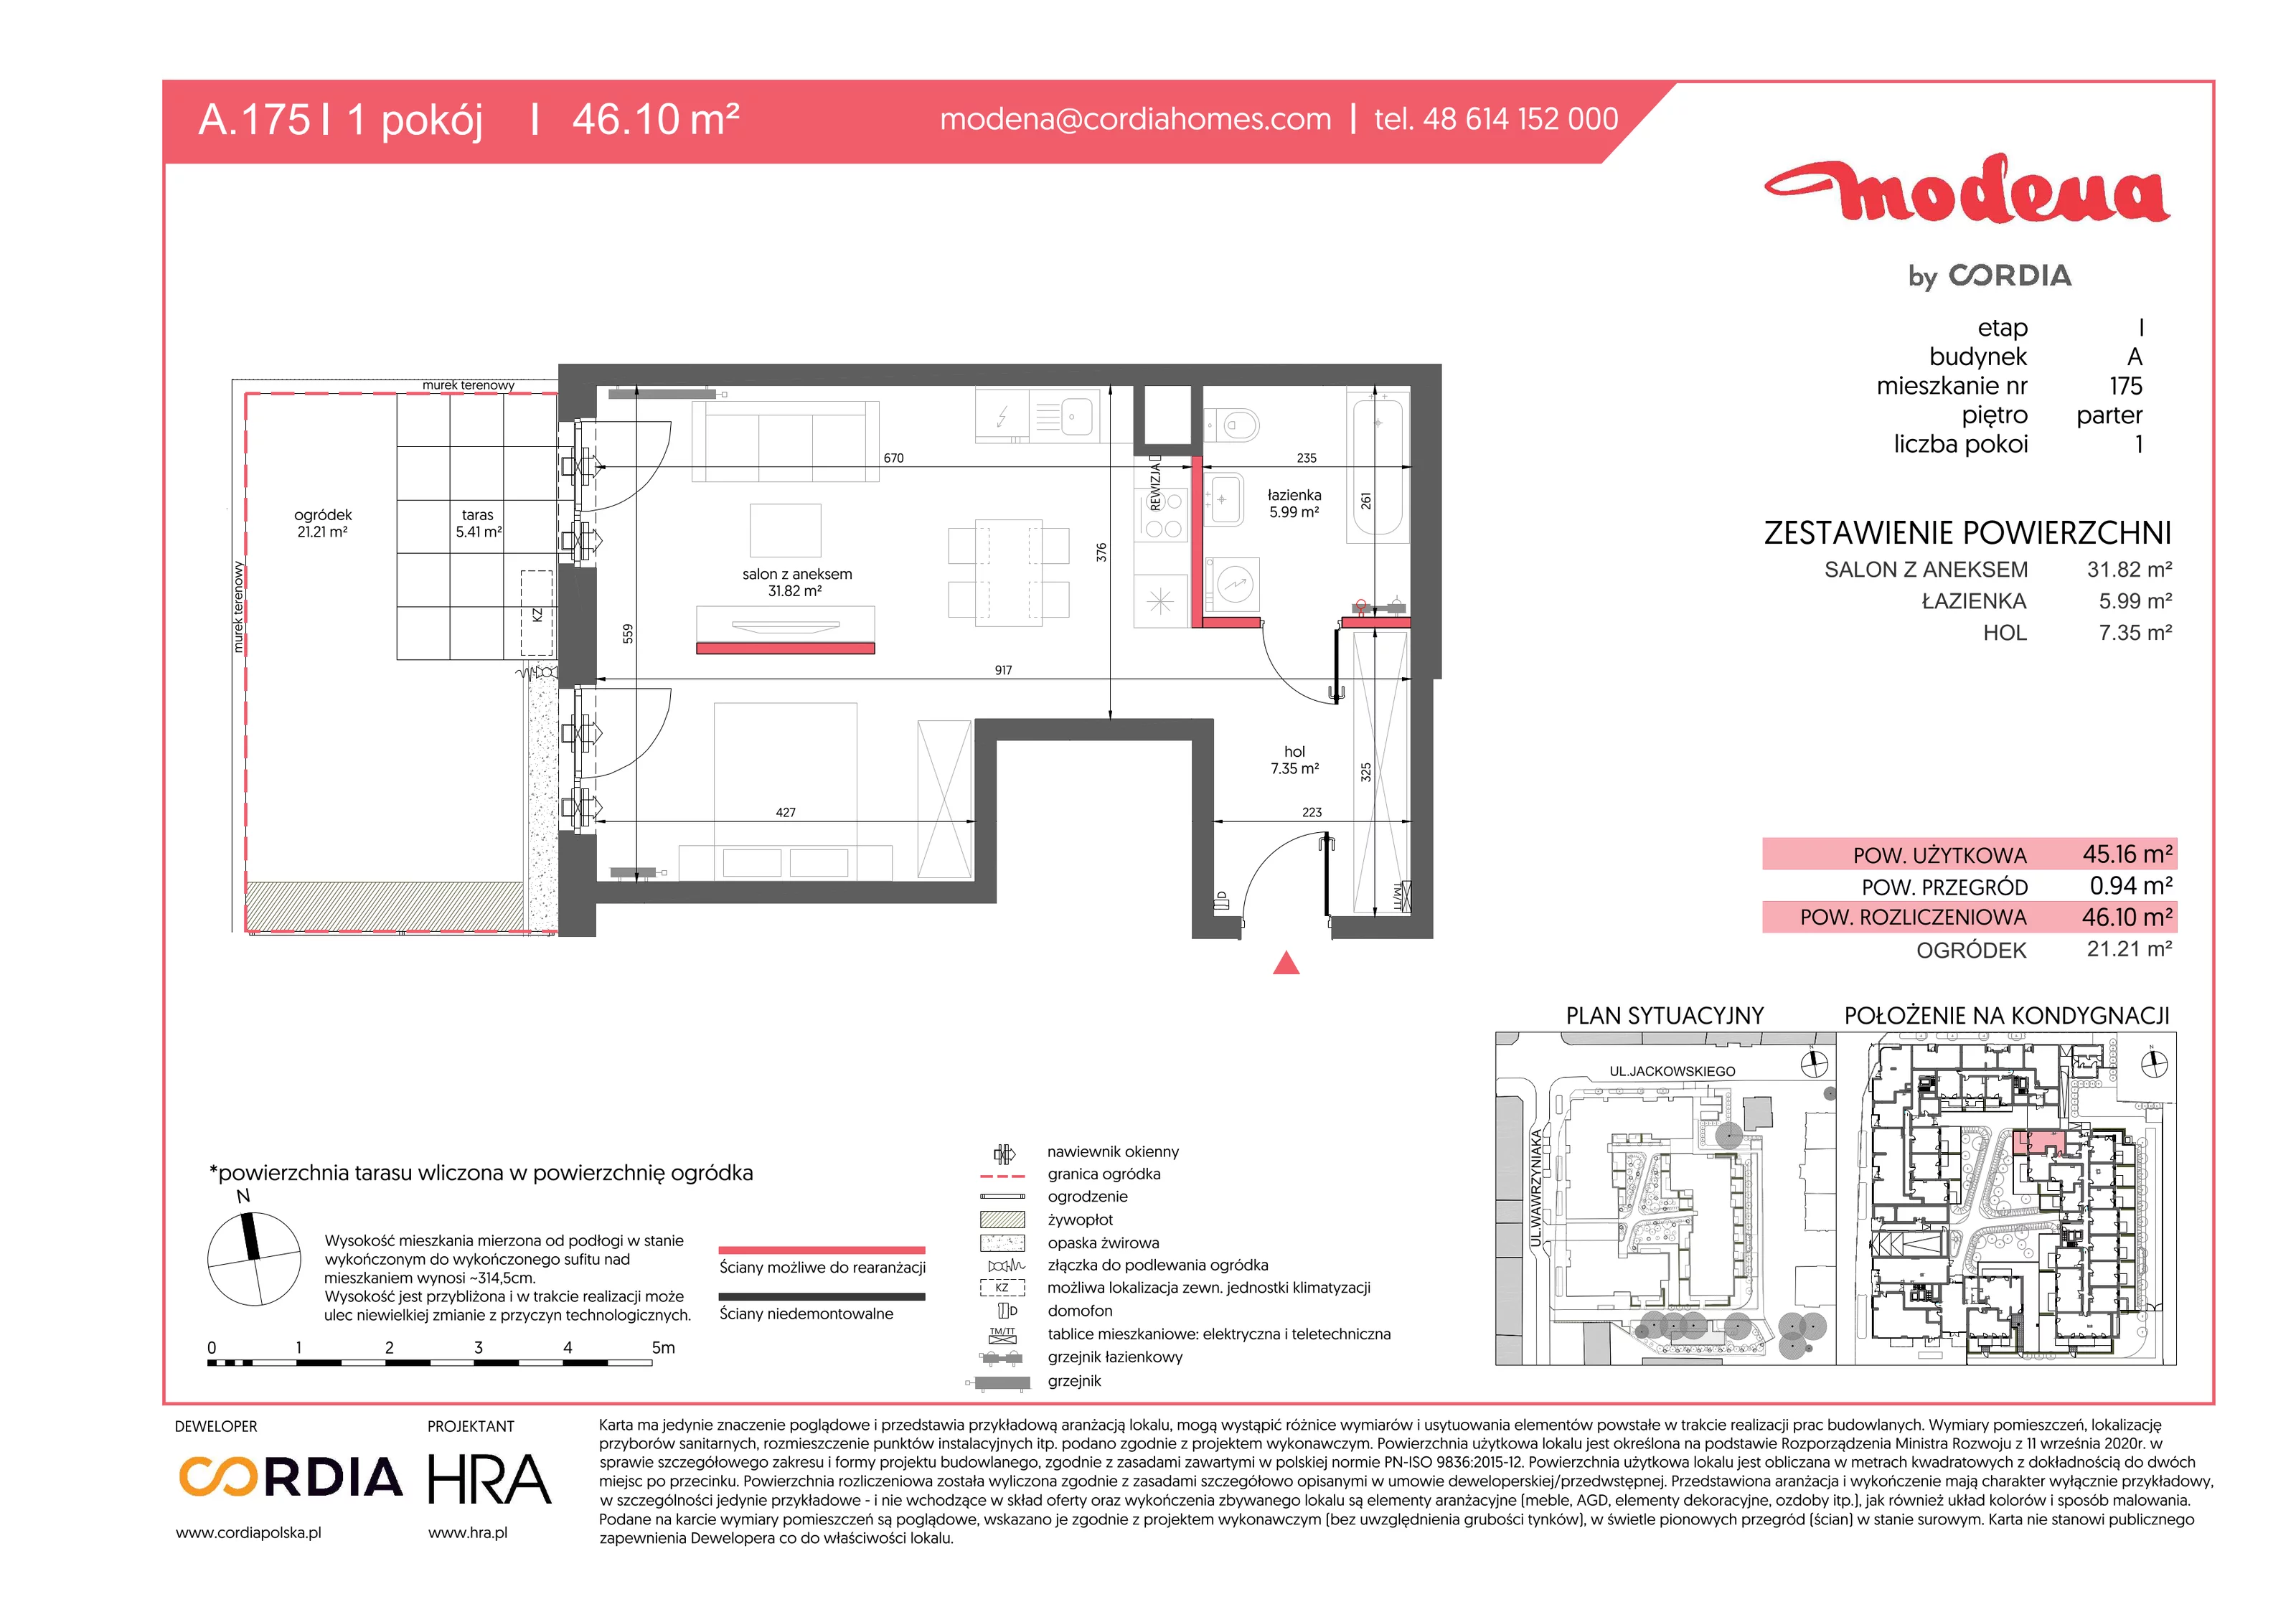 Mieszkanie 46,10 m², parter, oferta nr A.175, Modena, Poznań, Jeżyce, Jeżyce, ul. Jackowskiego 24